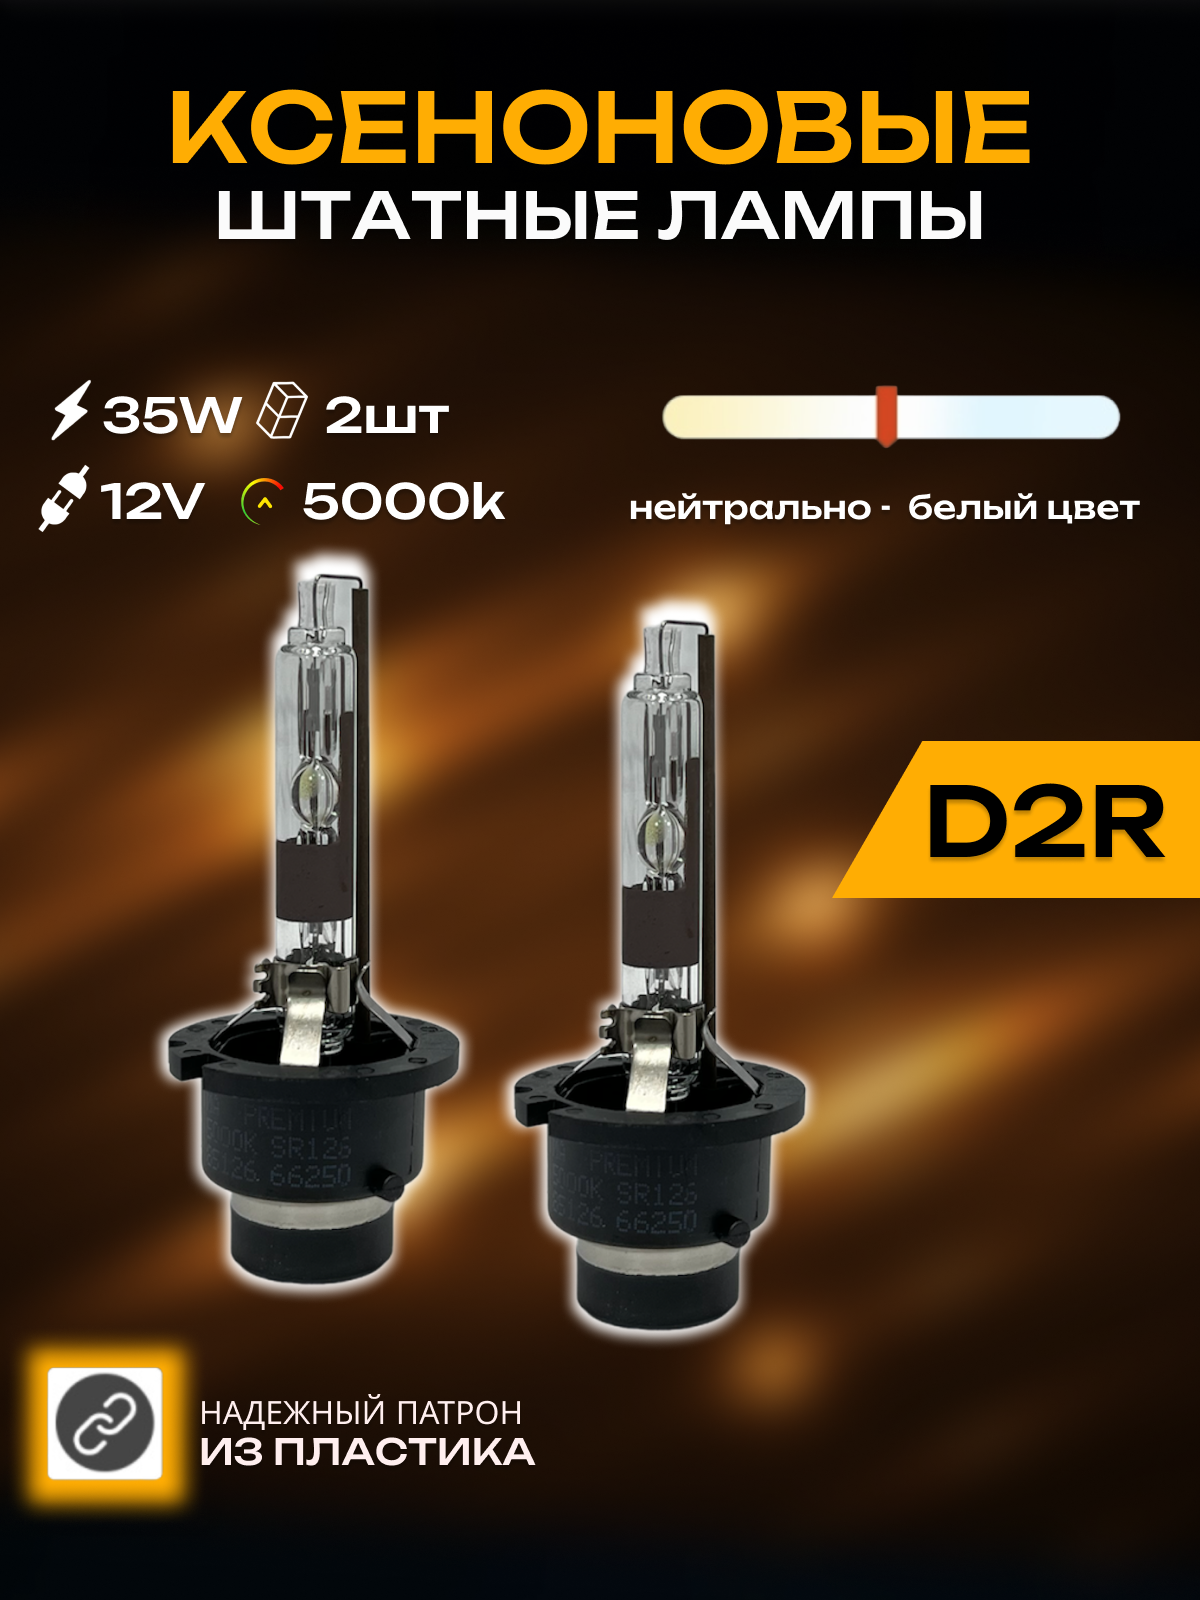 Ксеноновые лампы для автомобиля CarStore52 цоколь D2R питание 12V мощность 35W пластиковый цоколь комплект 2шт.